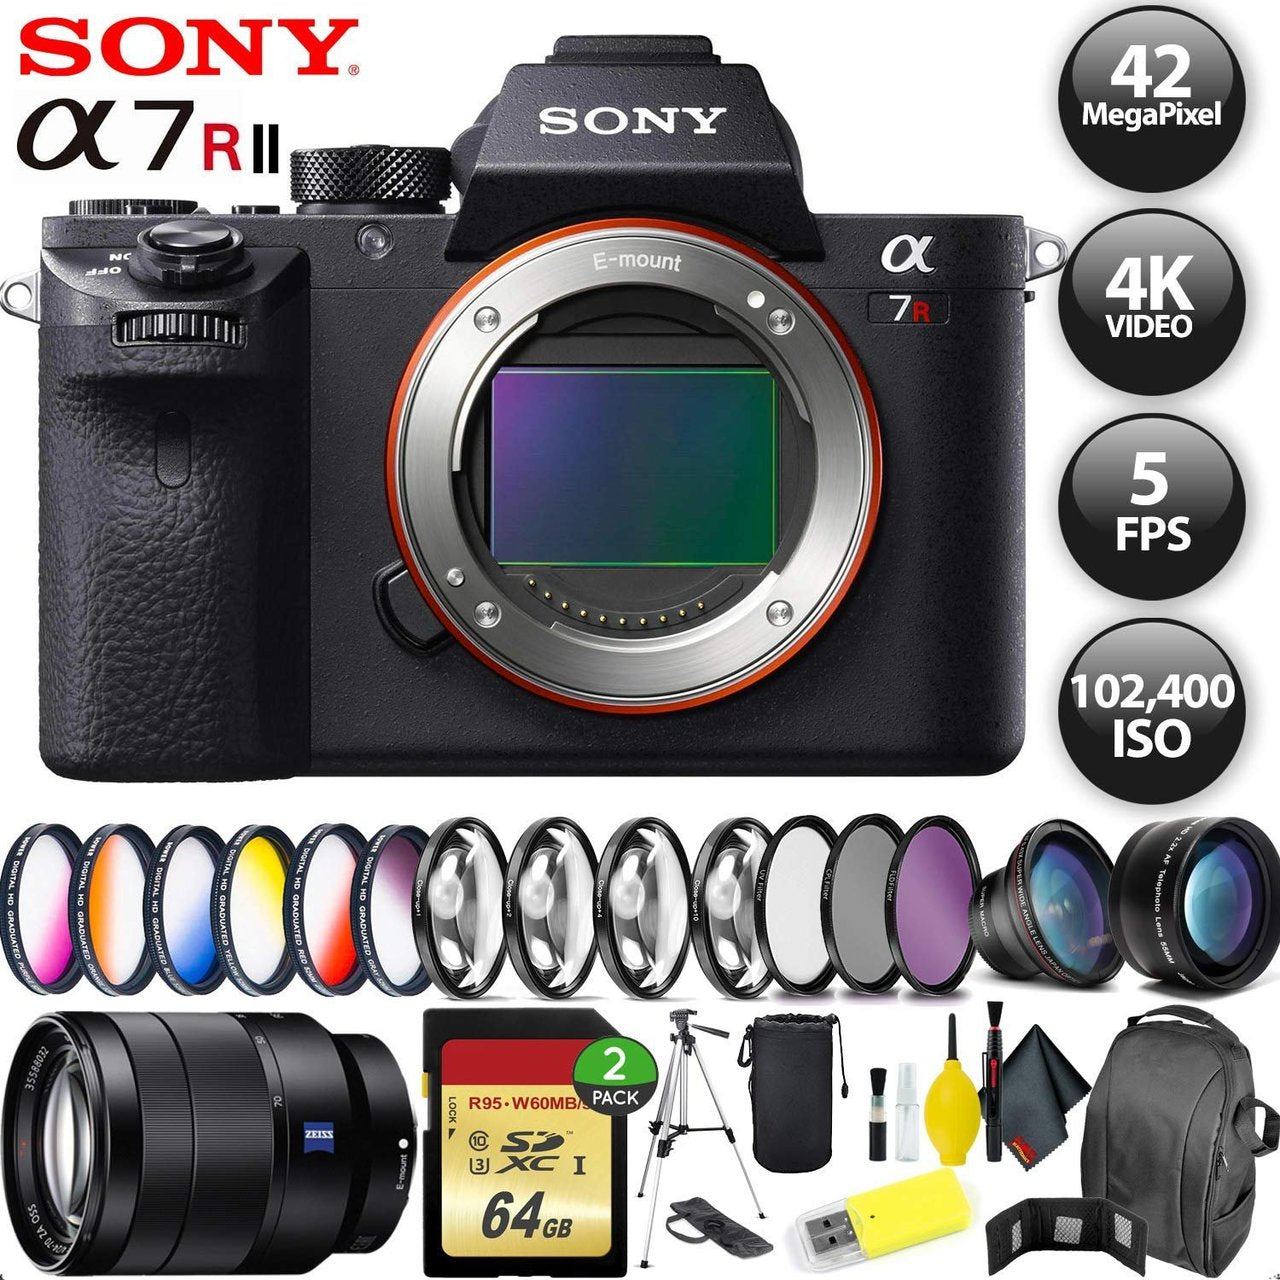 Sony Alpha a7R II Mirrorless Digital Camera + 64GB Memory Card + Sony FE 70-200mm Lens